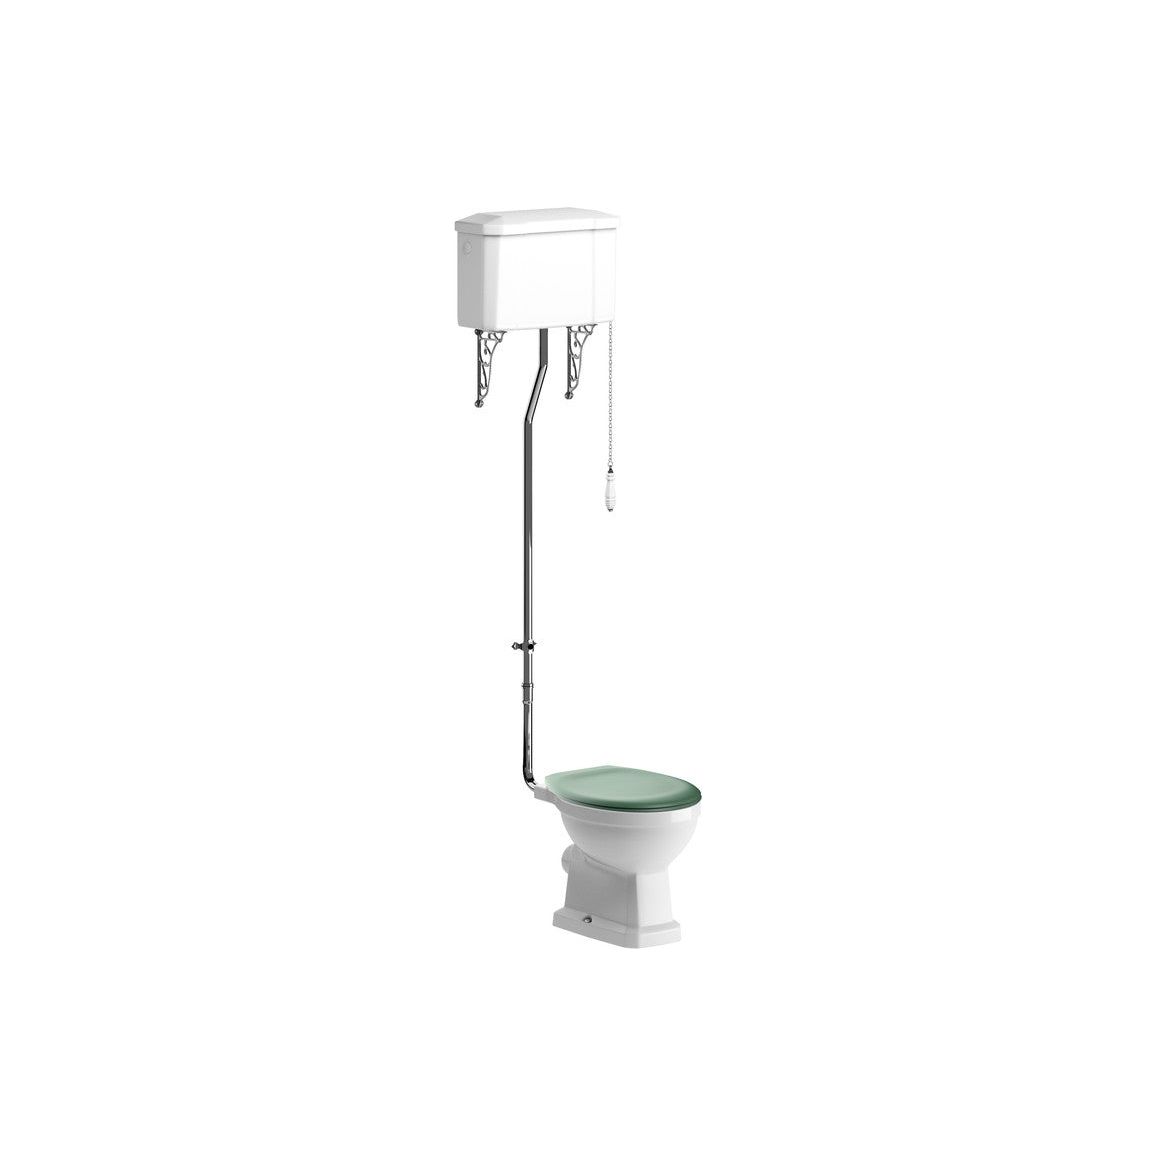 WC haut niveau Bonny et siège à fermeture douce vert sauge